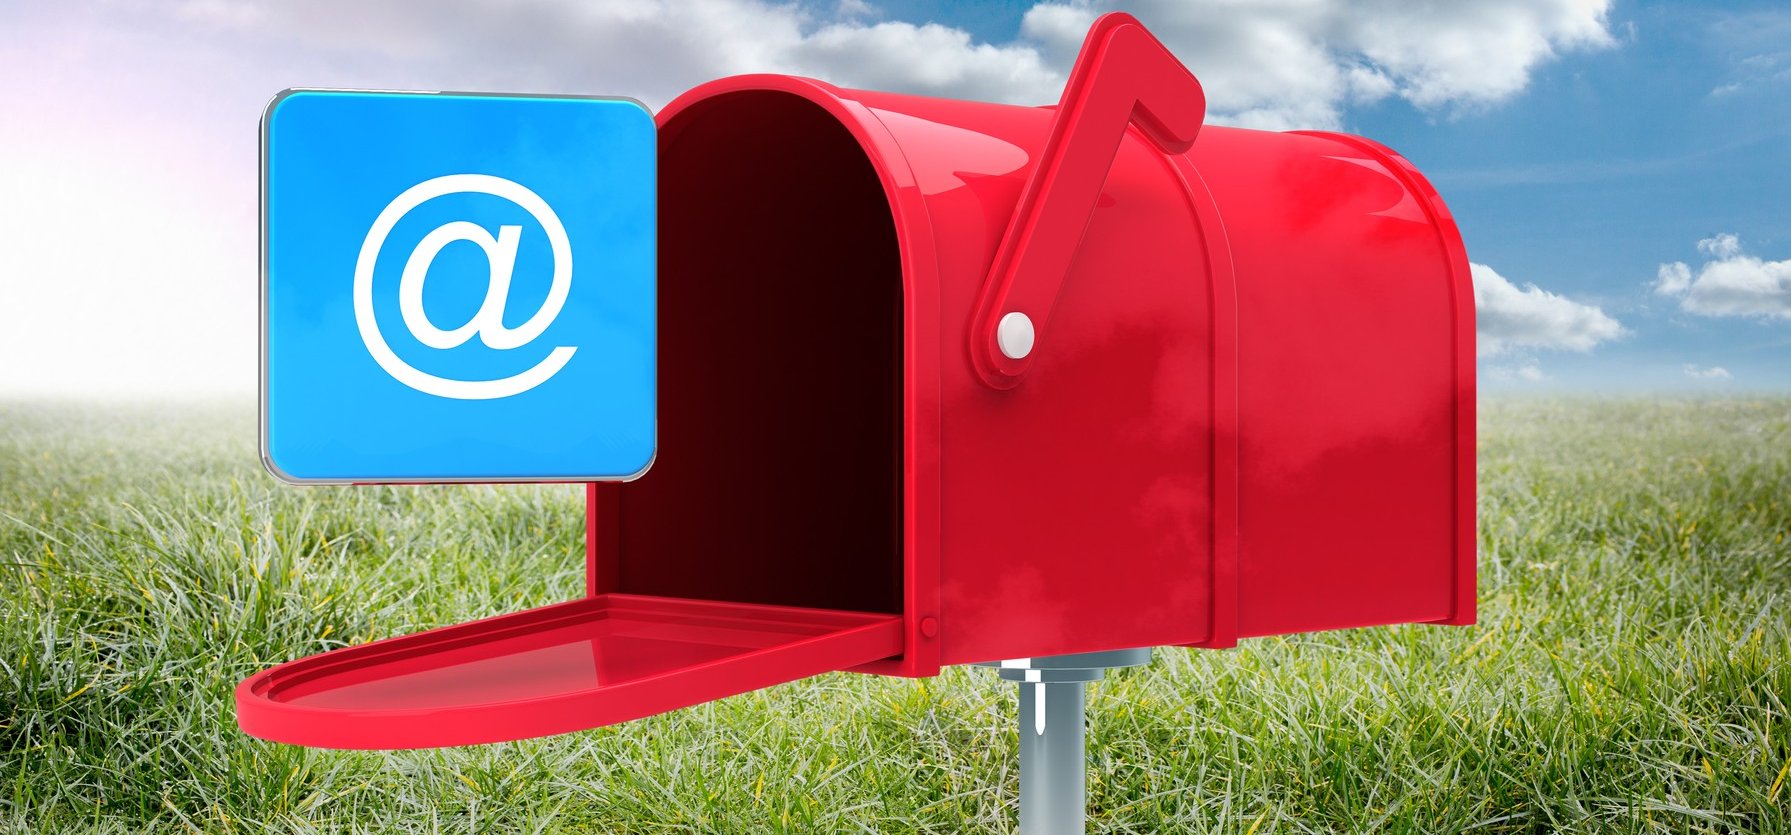 Lassan már csak a postagalamb marad nekünk? - ismét búcsút inthetünk egy ingyenes emailküldőnek